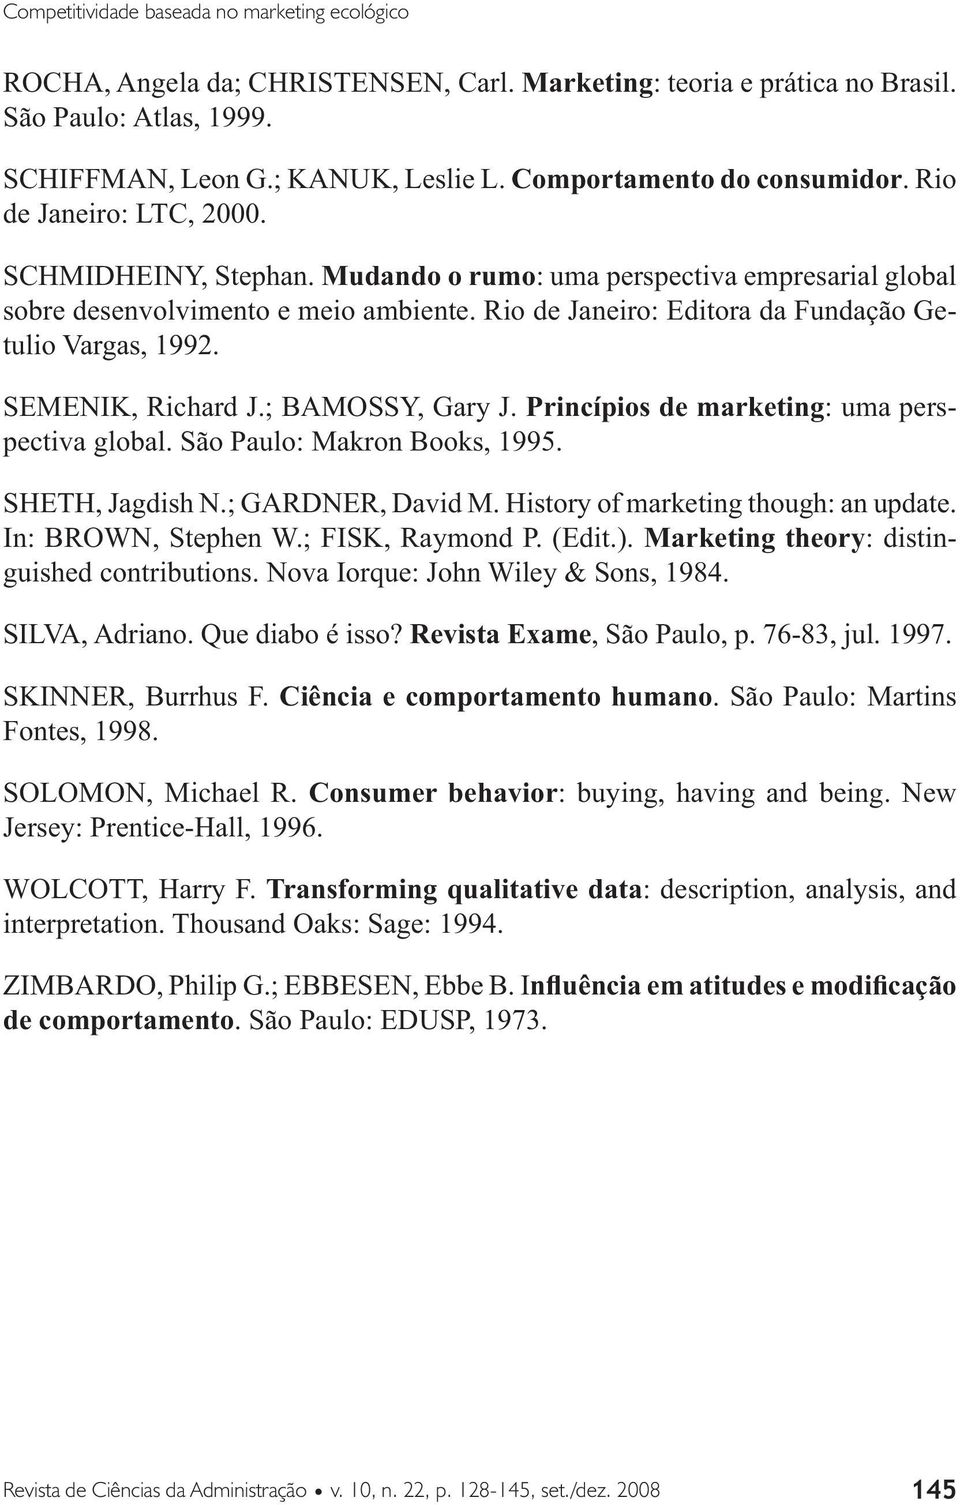 Rio de Janeiro: Editora da Fundação Getulio Vargas, 1992. SEMENIK, Richard J.; BAMOSSY, Gary J. Princípios de marketing: uma perspectiva global. São Paulo: Makron Books, 1995. SHETH, Jagdish N.